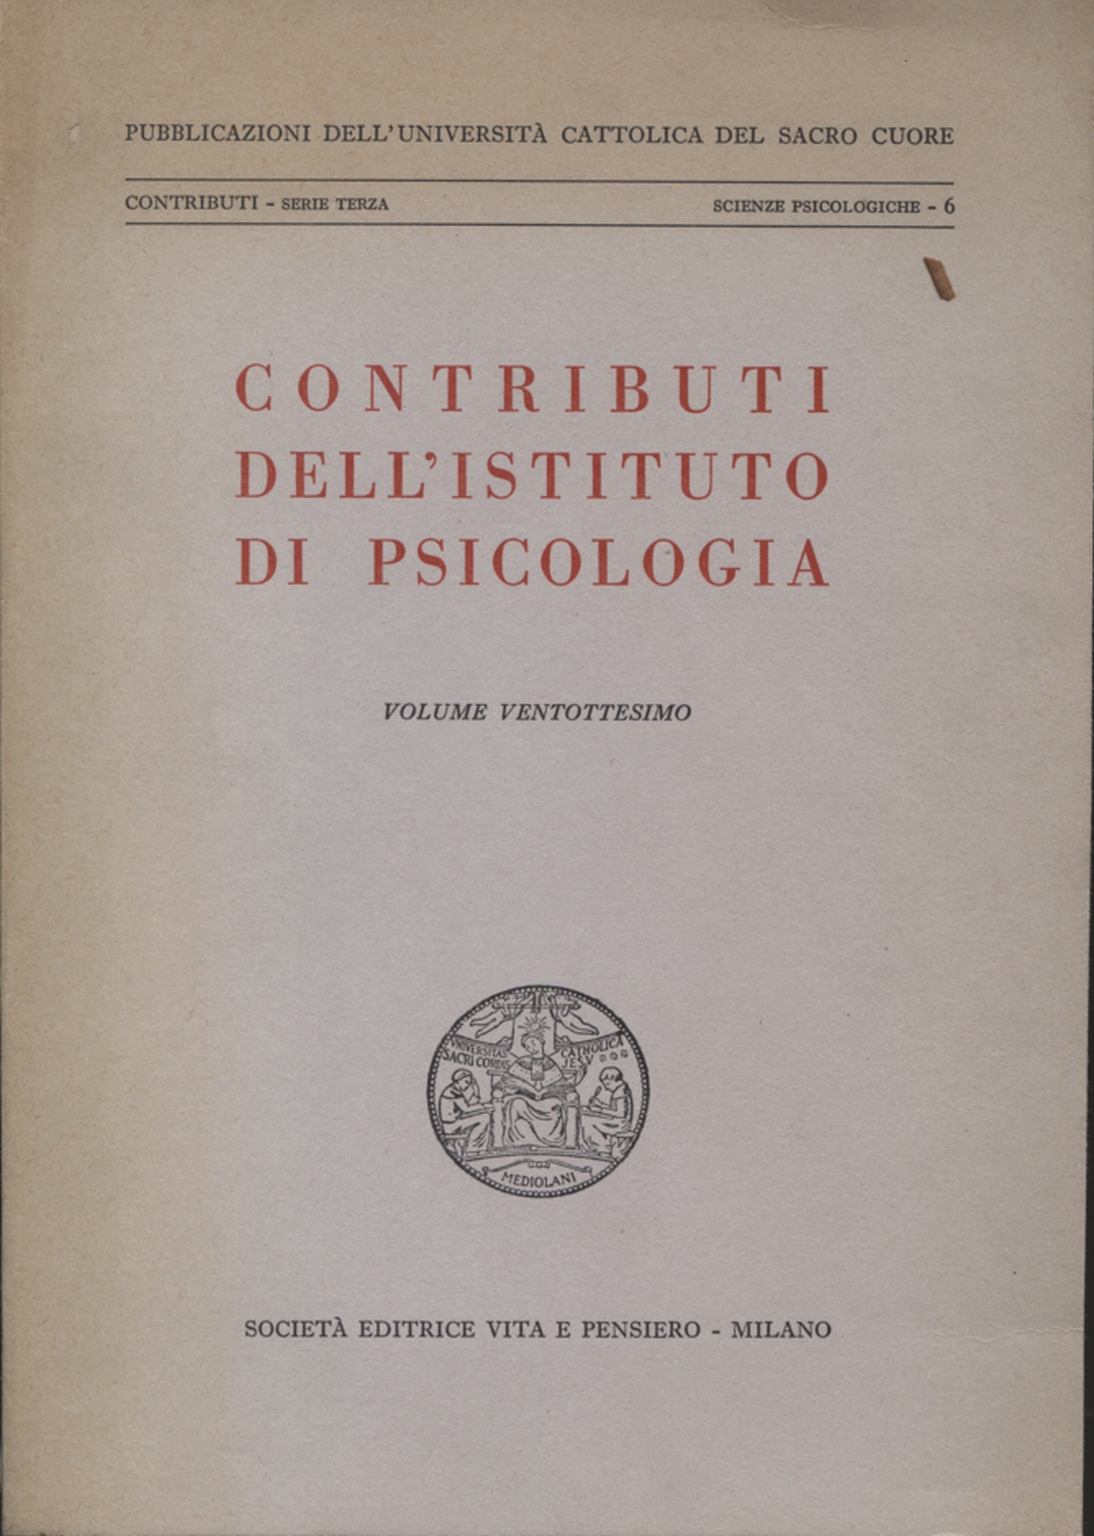 Beiträge des Instituts für psychologie (Volumen Ve, AA.VV.